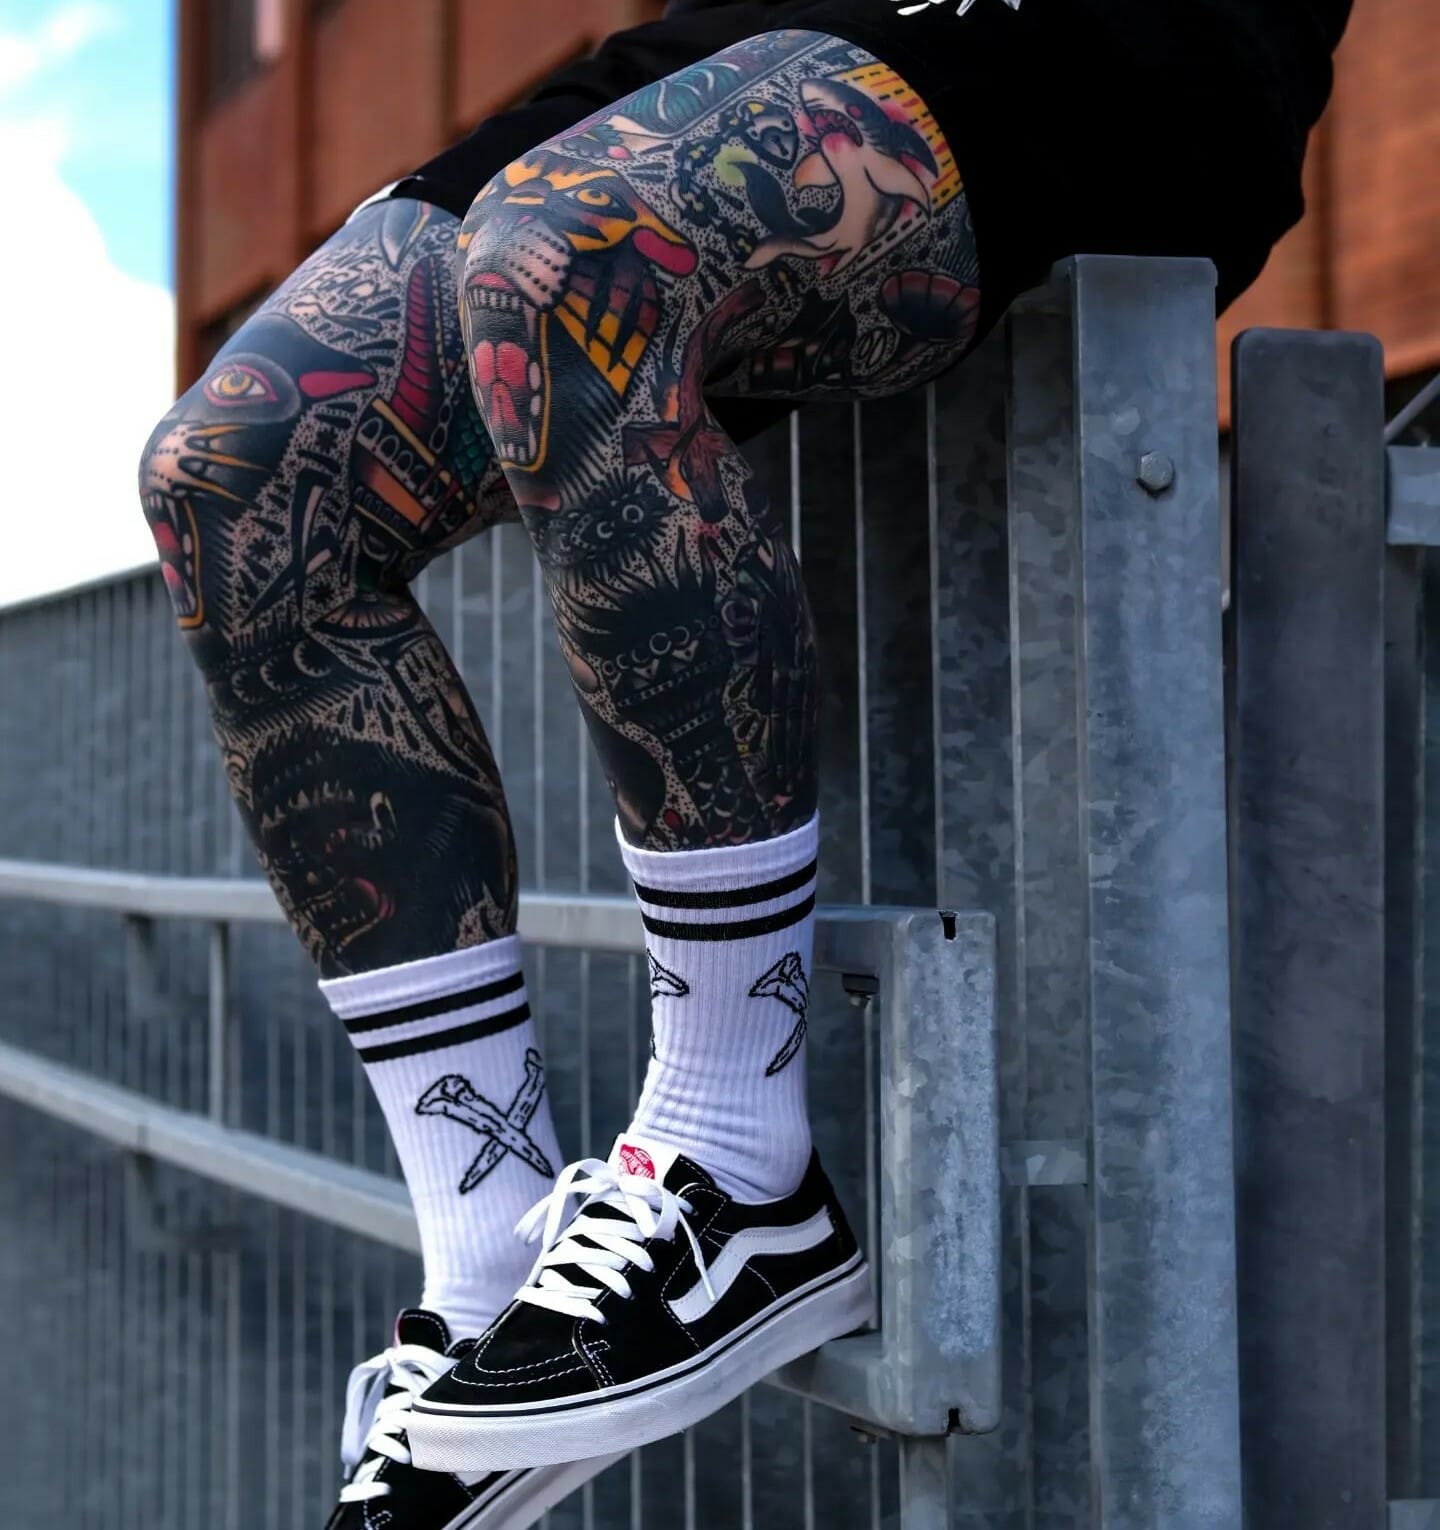 50 Most Popular Leg Sleeve Tattoo Models in 2023  Saved Tattoo